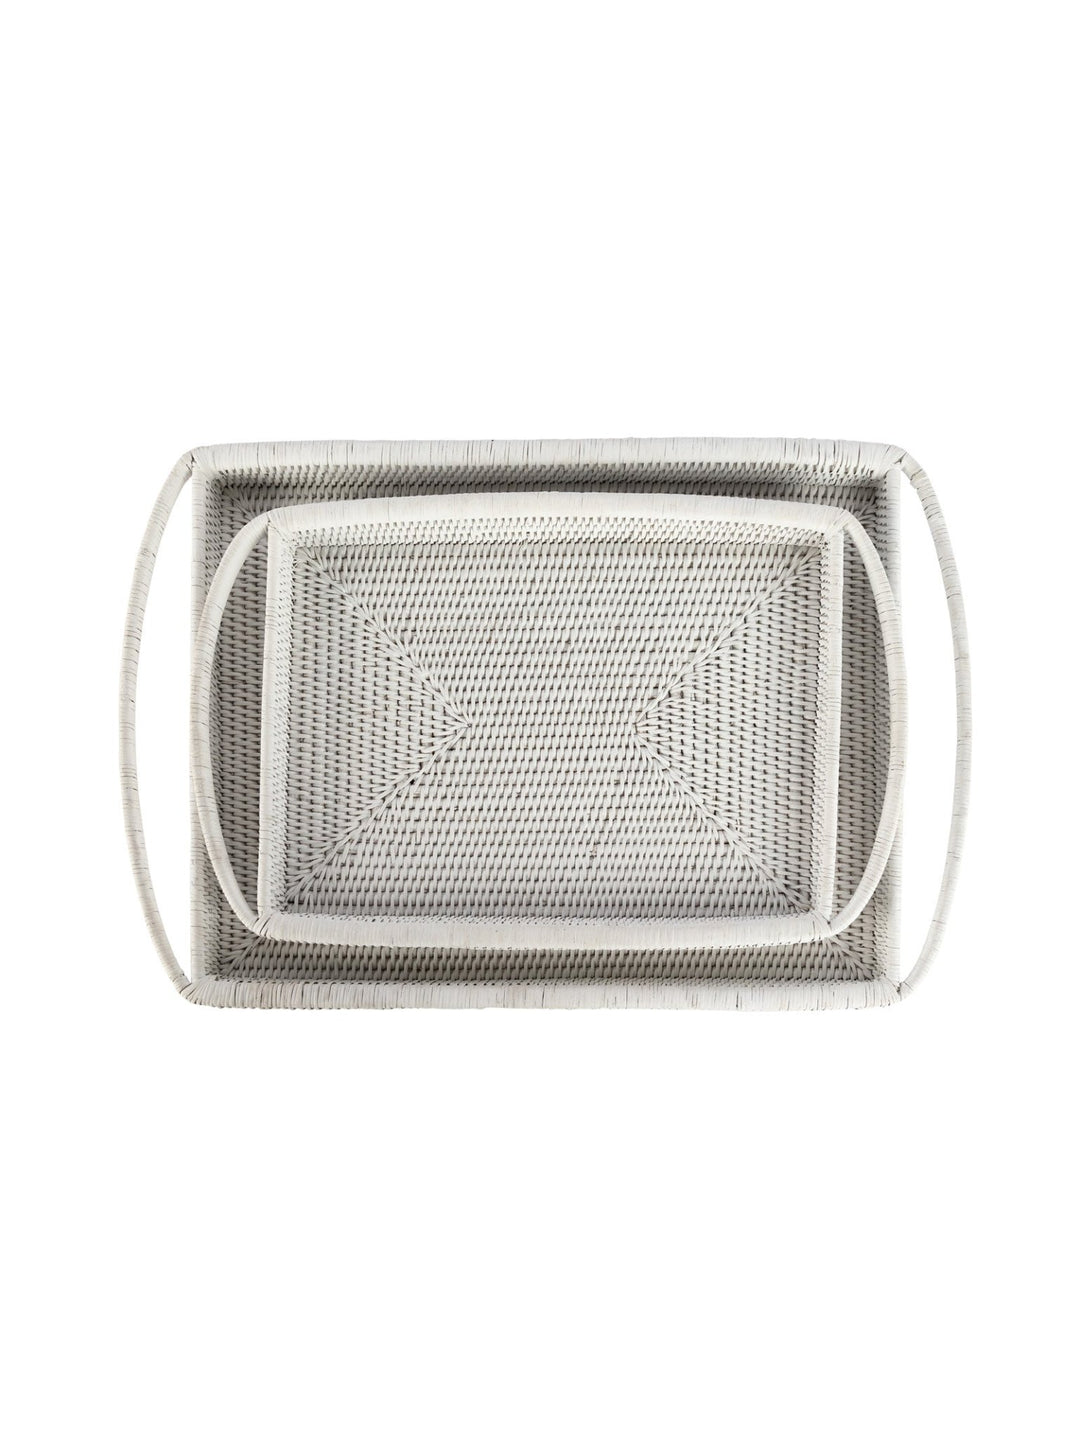 Tamarin Rectangular Tray in Blanco - tray - Hertex Haus - badge_handmade